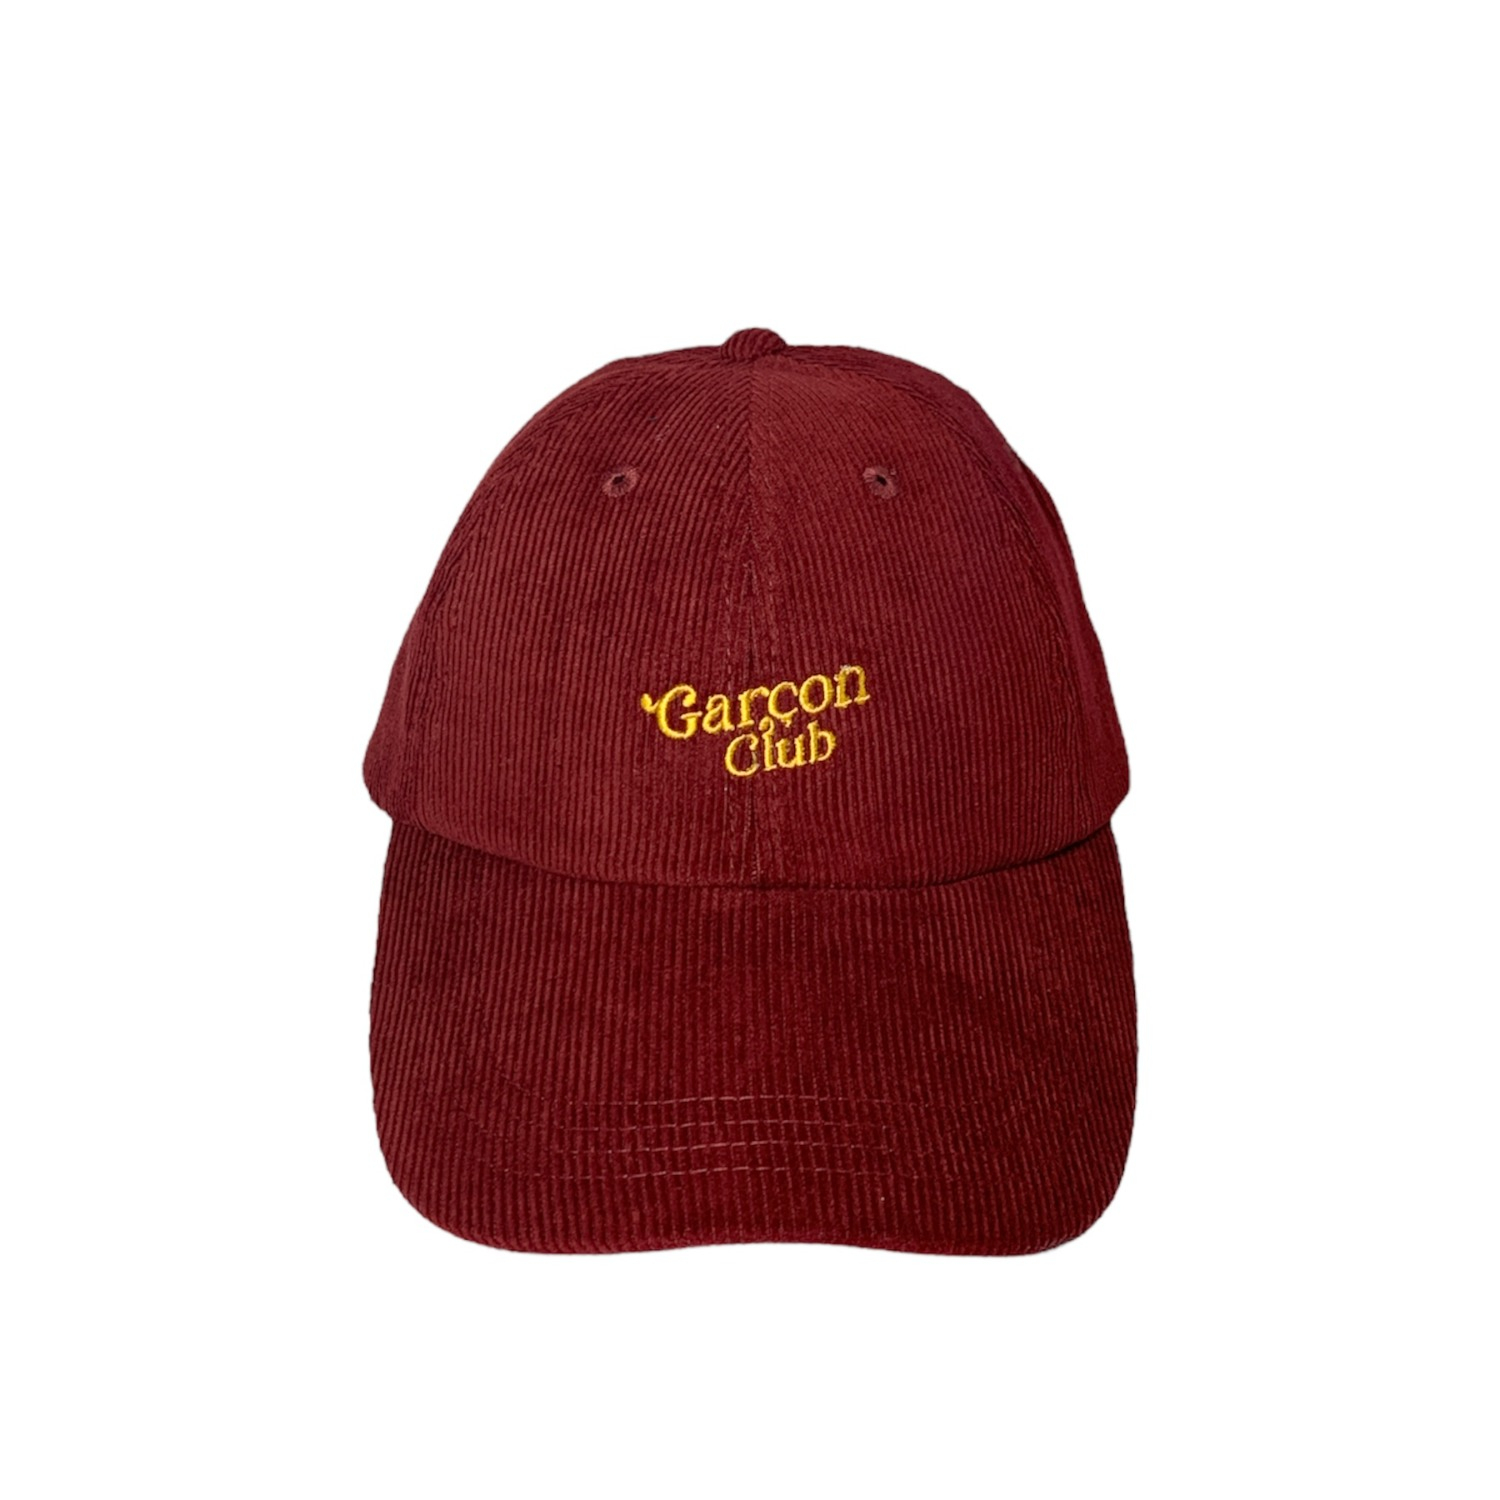 Garcon Club Cap (Maroon)